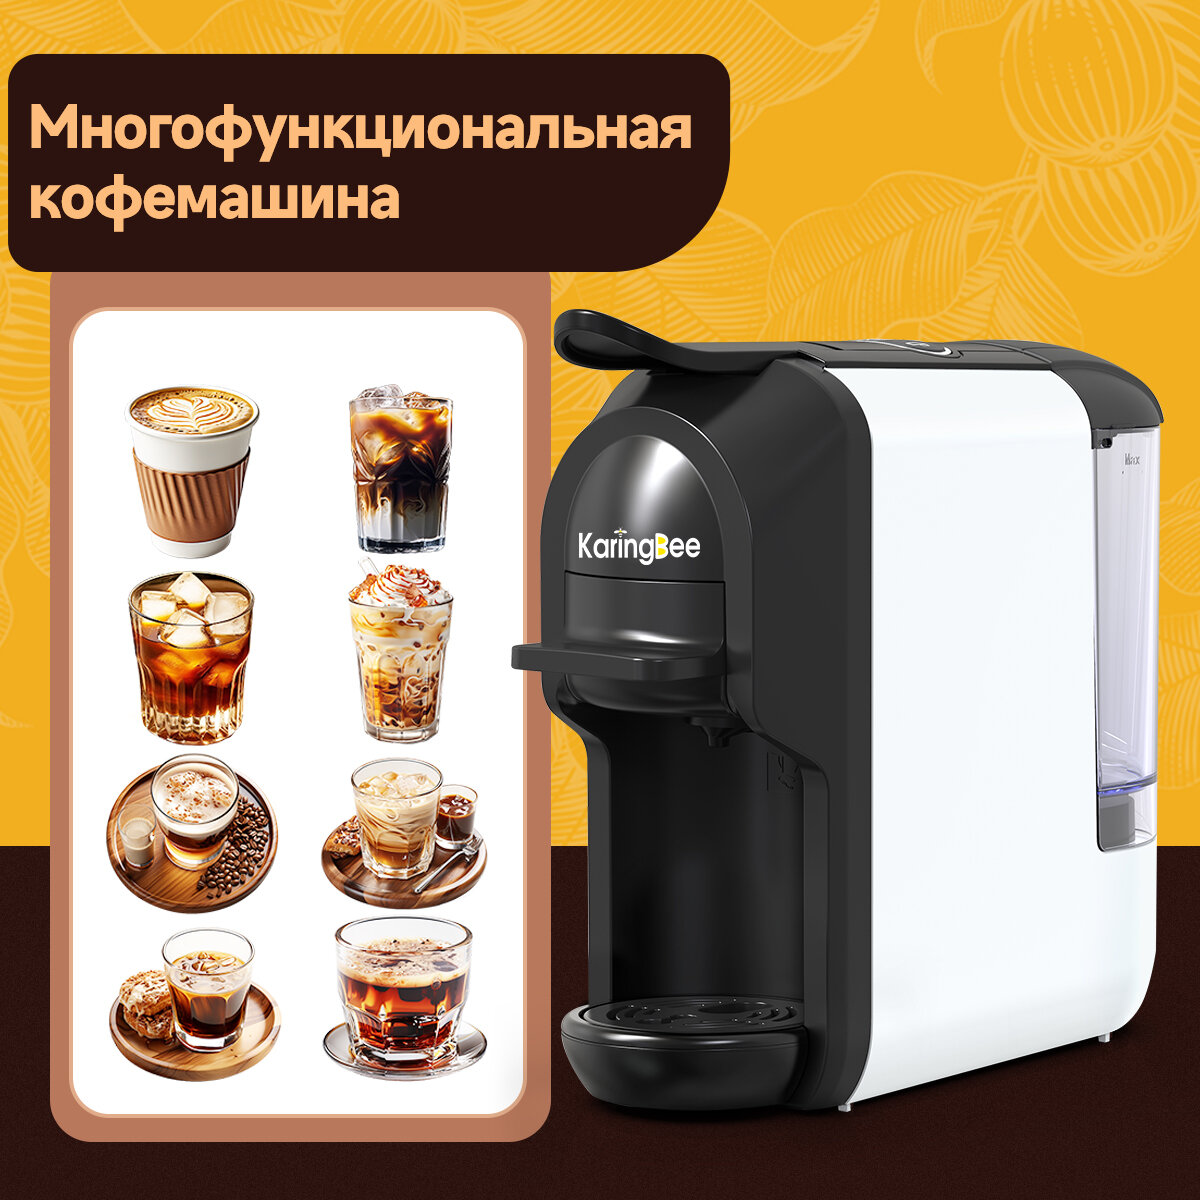 Капсульная кофемашина KaringBee ST-510, 4-в-1 белый/мощность 1450 Вт и давлением 19 бар/эспрессо и американо/капсулы Nespresso+Dolce Gusto+ESE 44мм+молотный кофе